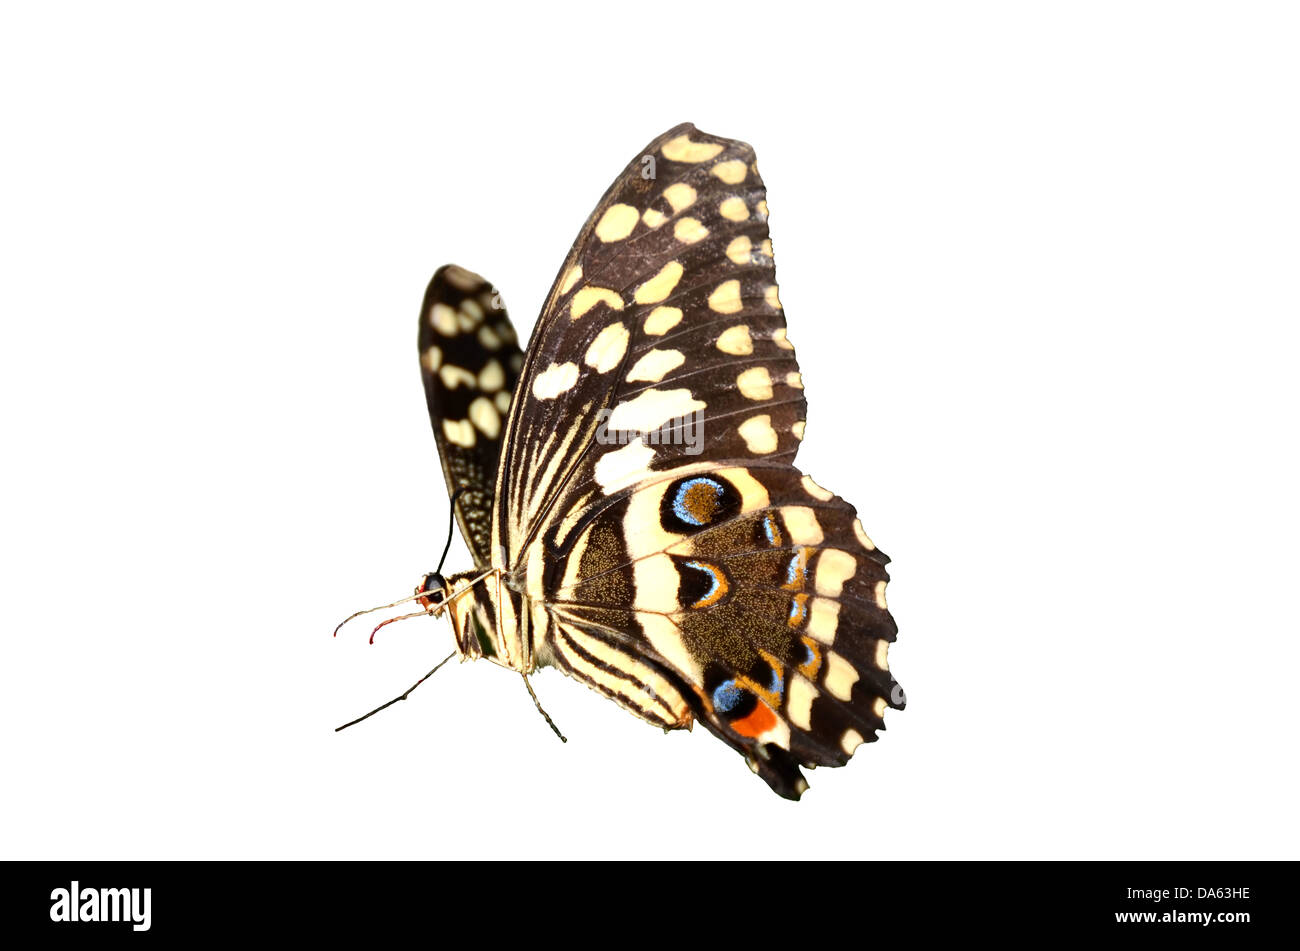 Citrus Schwalbenschwanz Schmetterling, Papilio Demodocus aus Sub-Sahara Afrika. Vor einem weißen Hintergrund isoliert Stockfoto